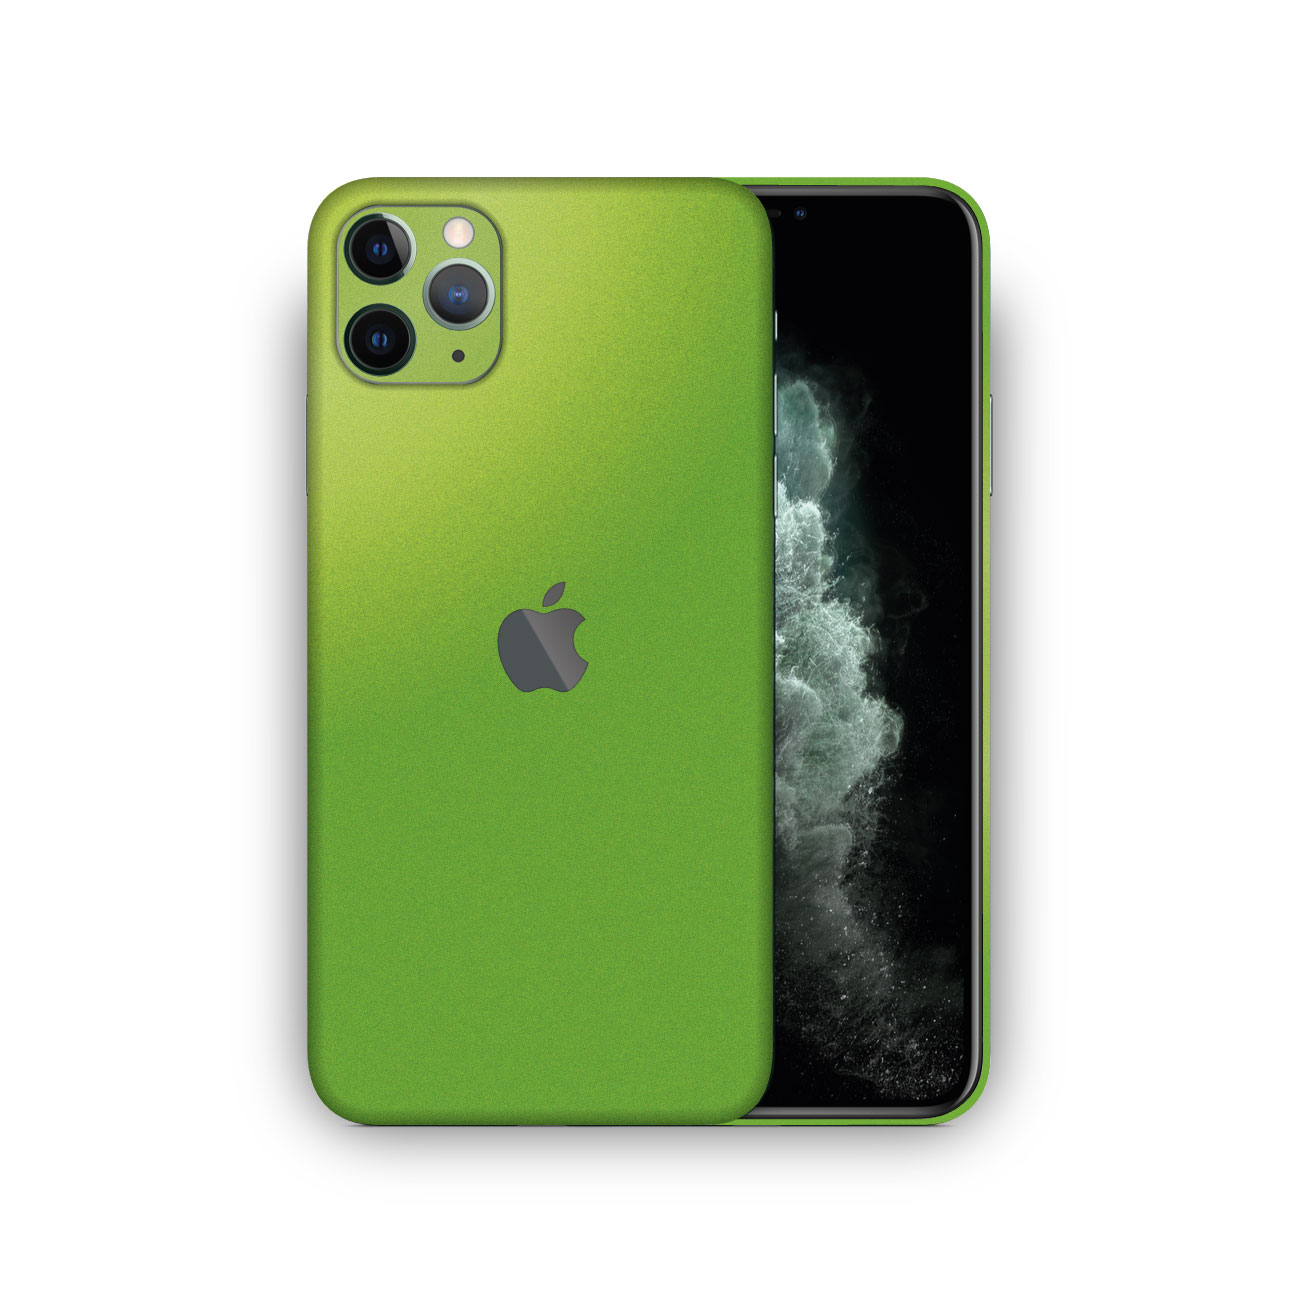 Apple Iphone 11 Pro Max Viper Green Metallic Matt Skin Ultra Skins